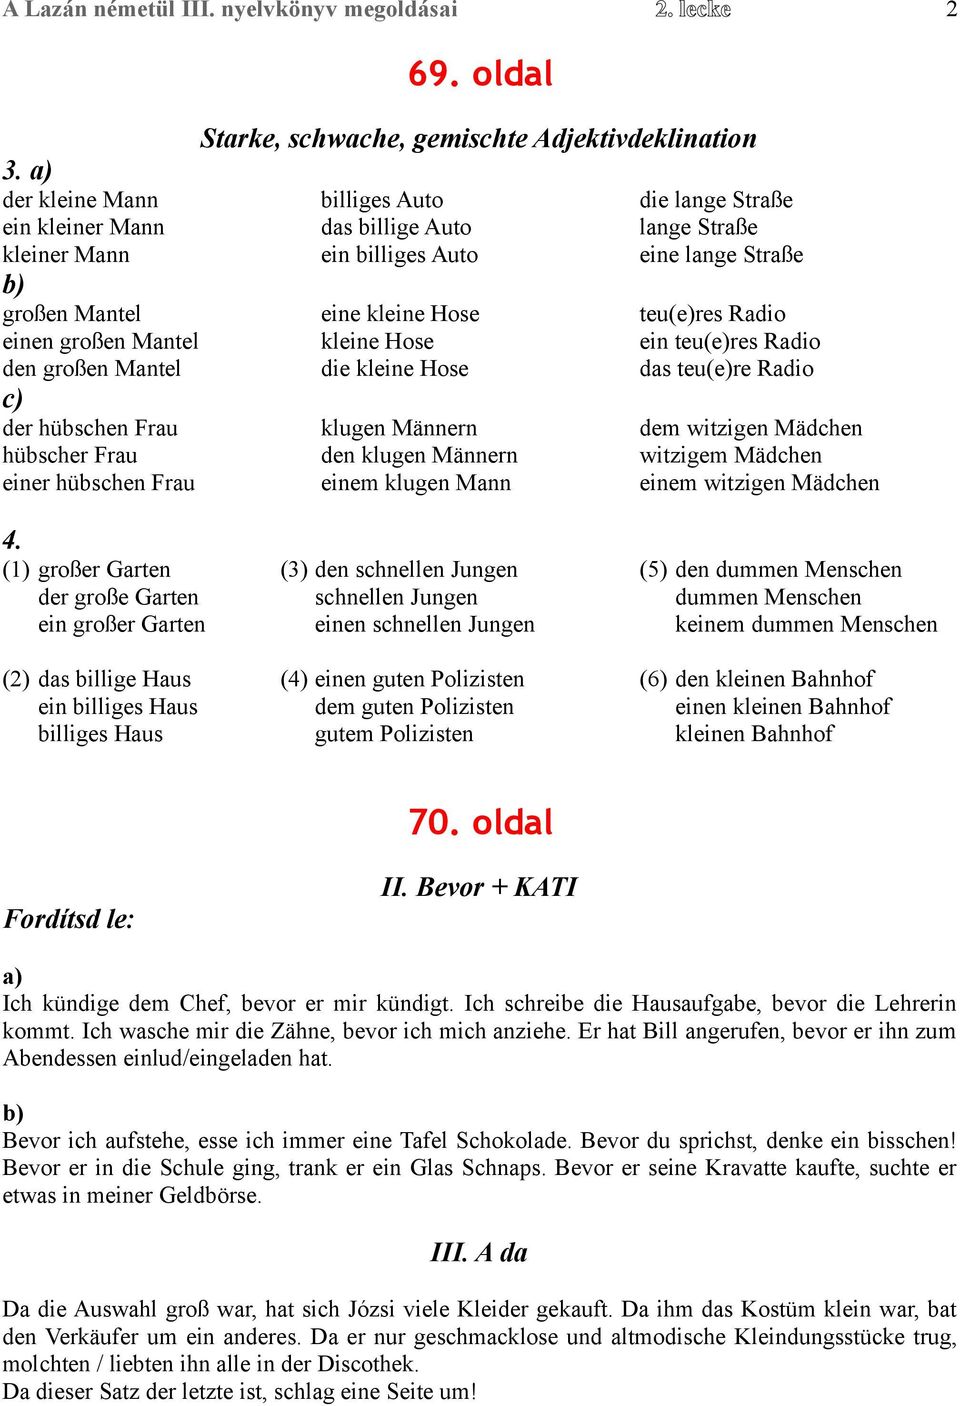 A Lazán németül III. nyelvkönyv 2. leckéjének megoldásai. 66. oldal. 67.  oldal. 68. oldal - PDF Ingyenes letöltés